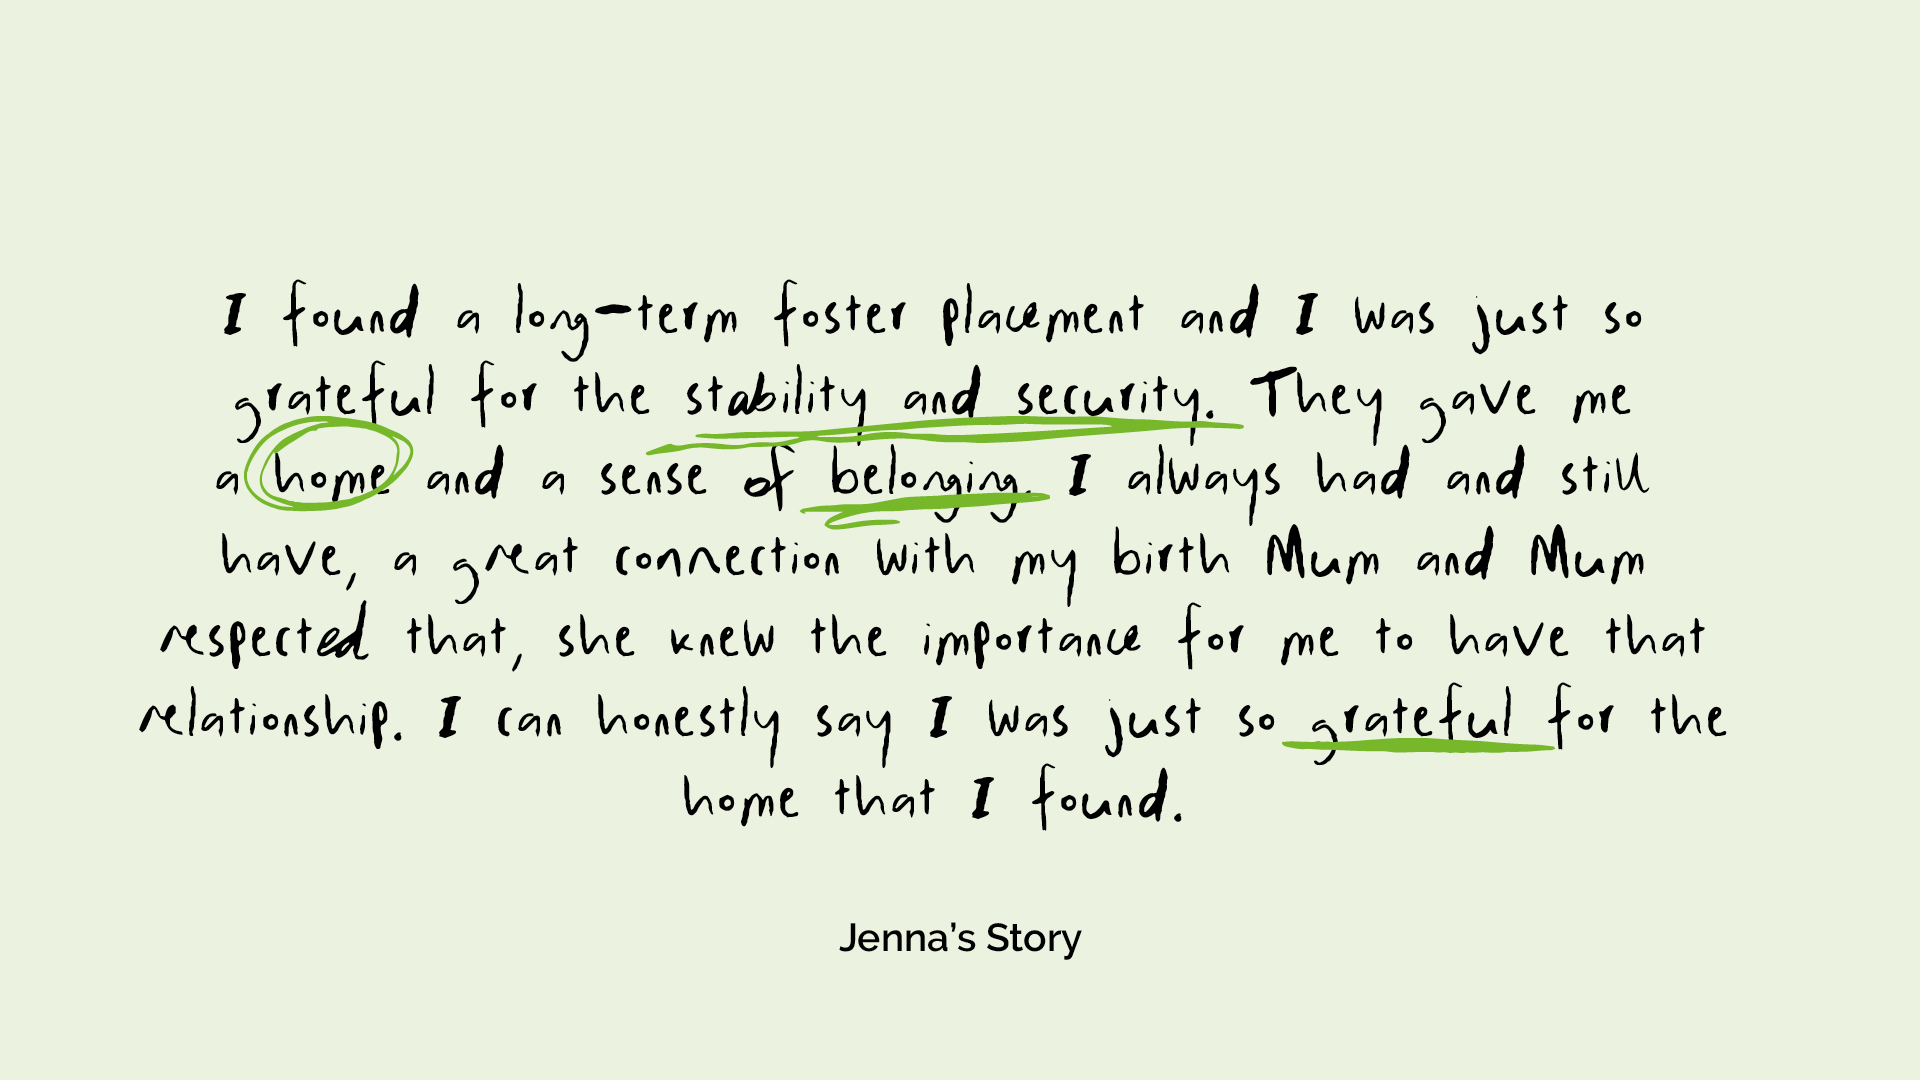 Jenna's Story